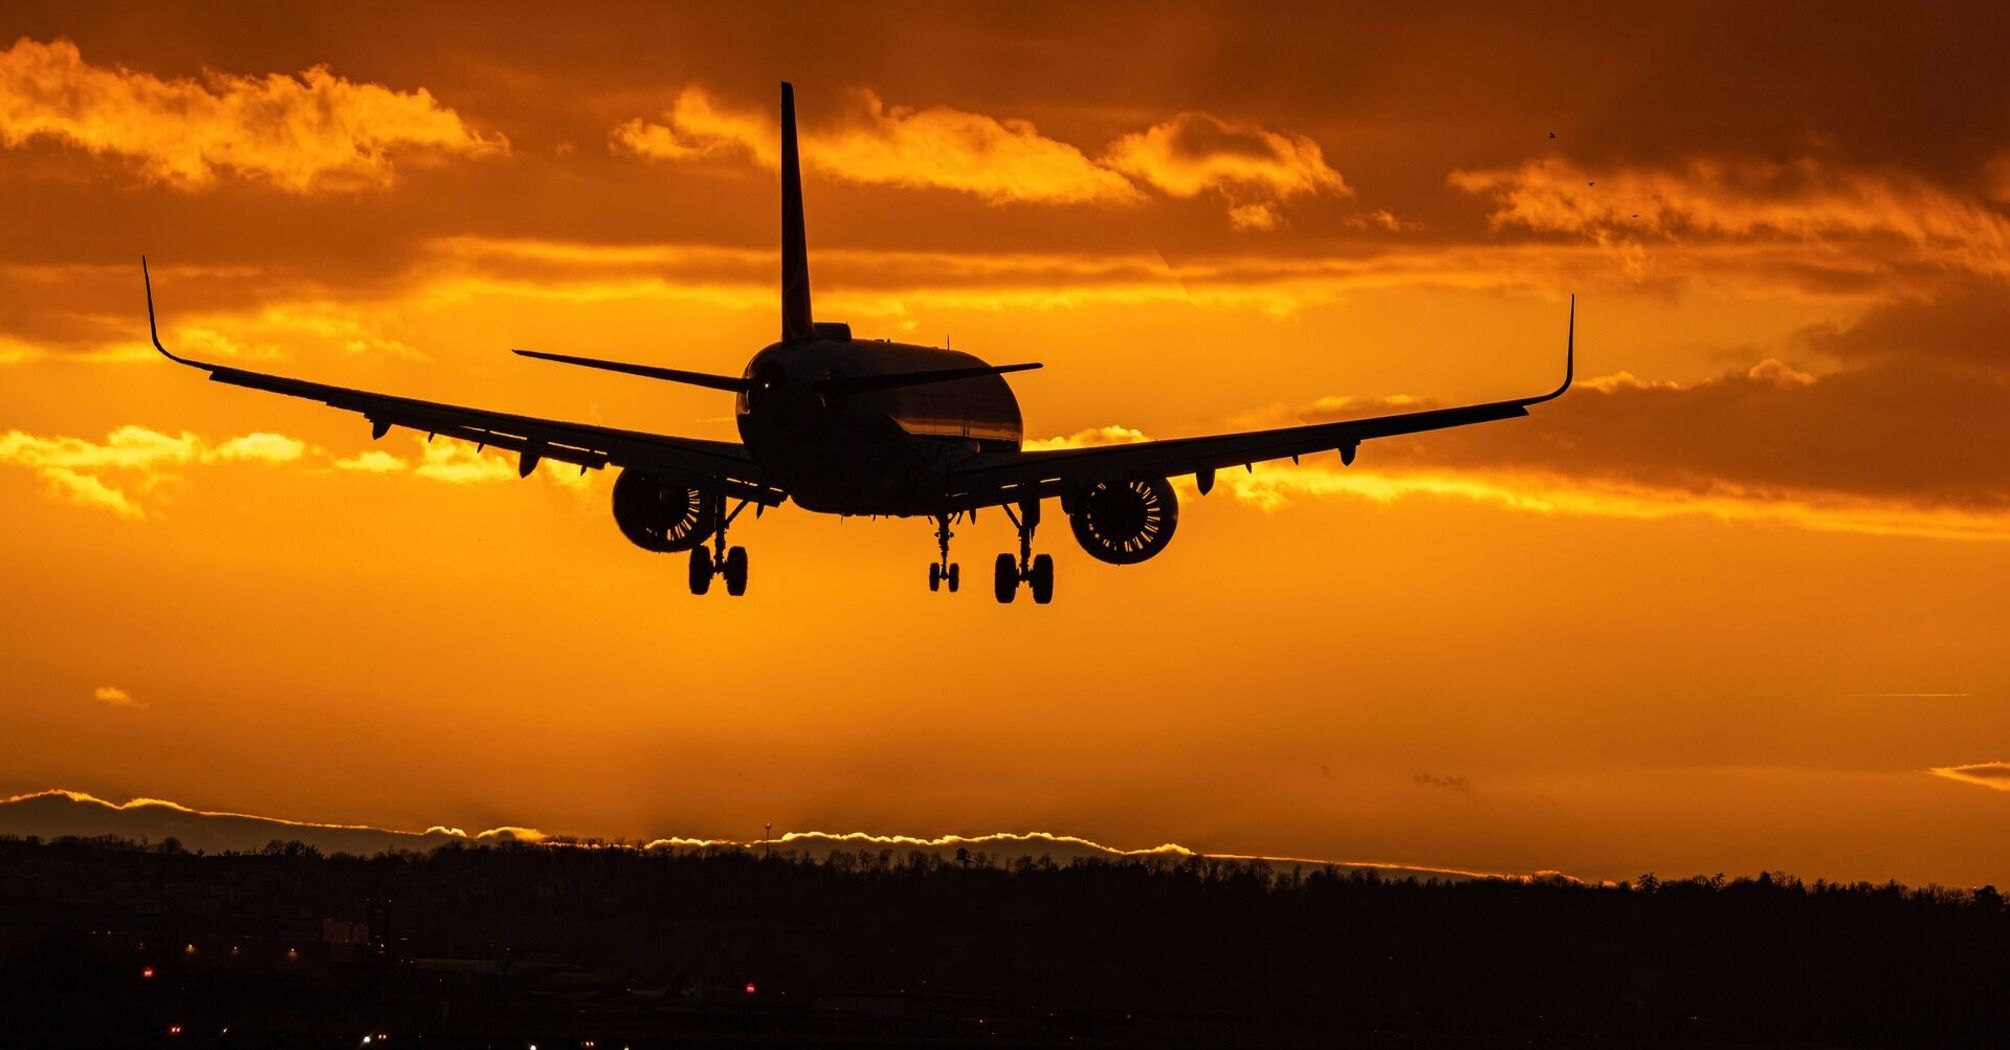 Airplane landing at sunset